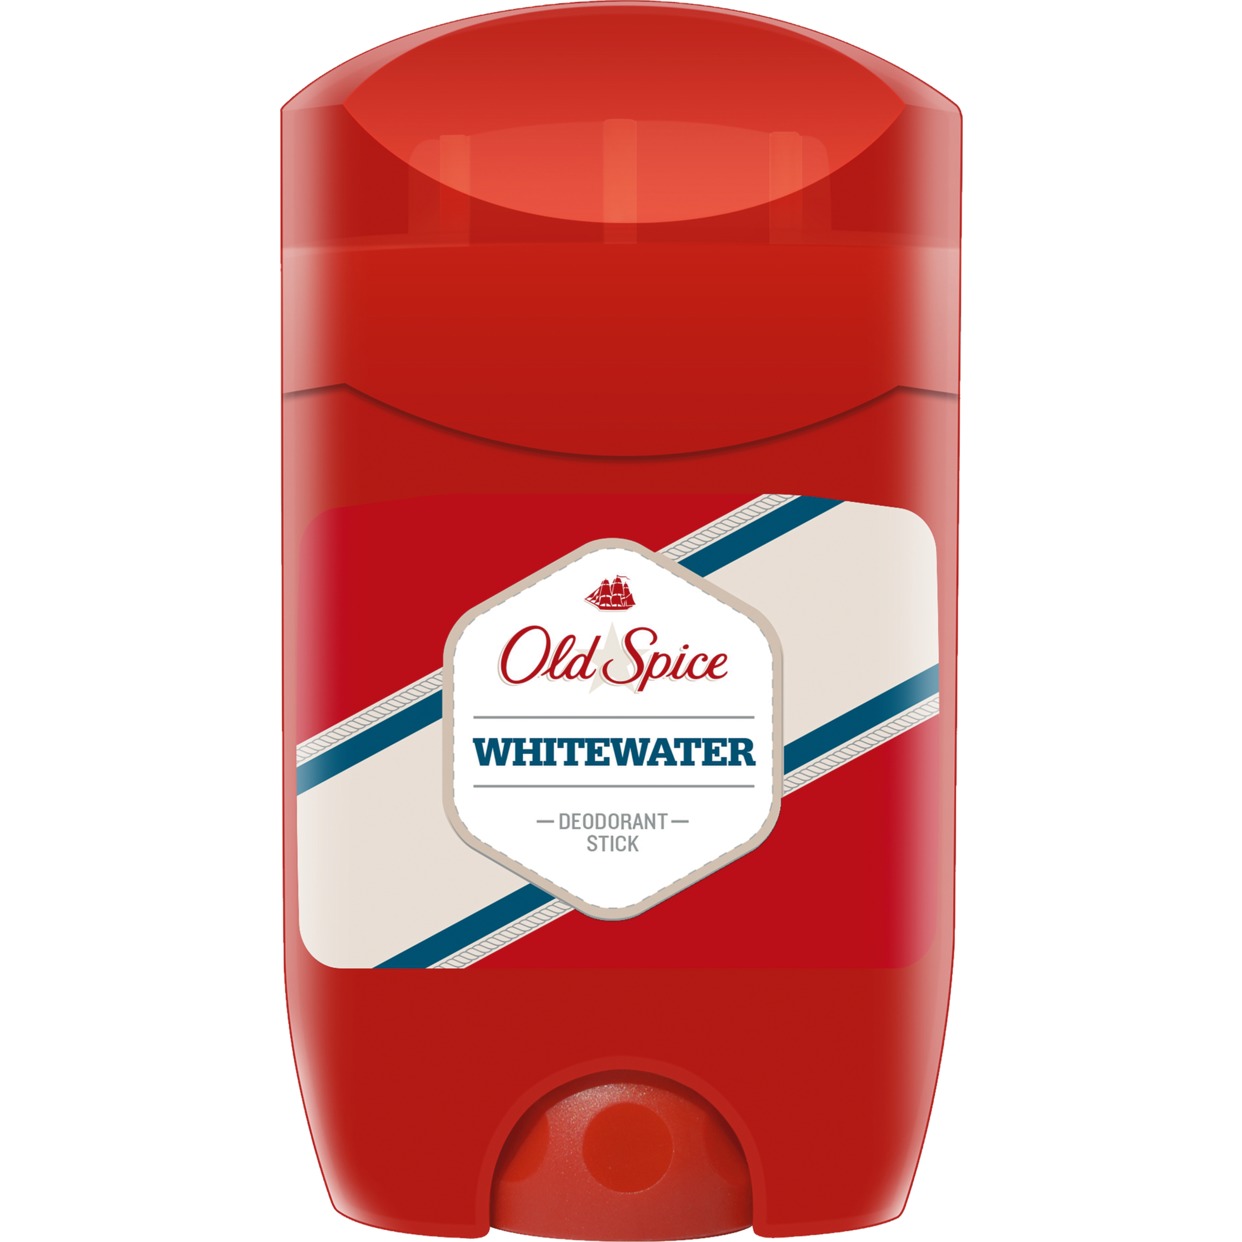 Дезодорант Old Spice Whitewater 50 мл